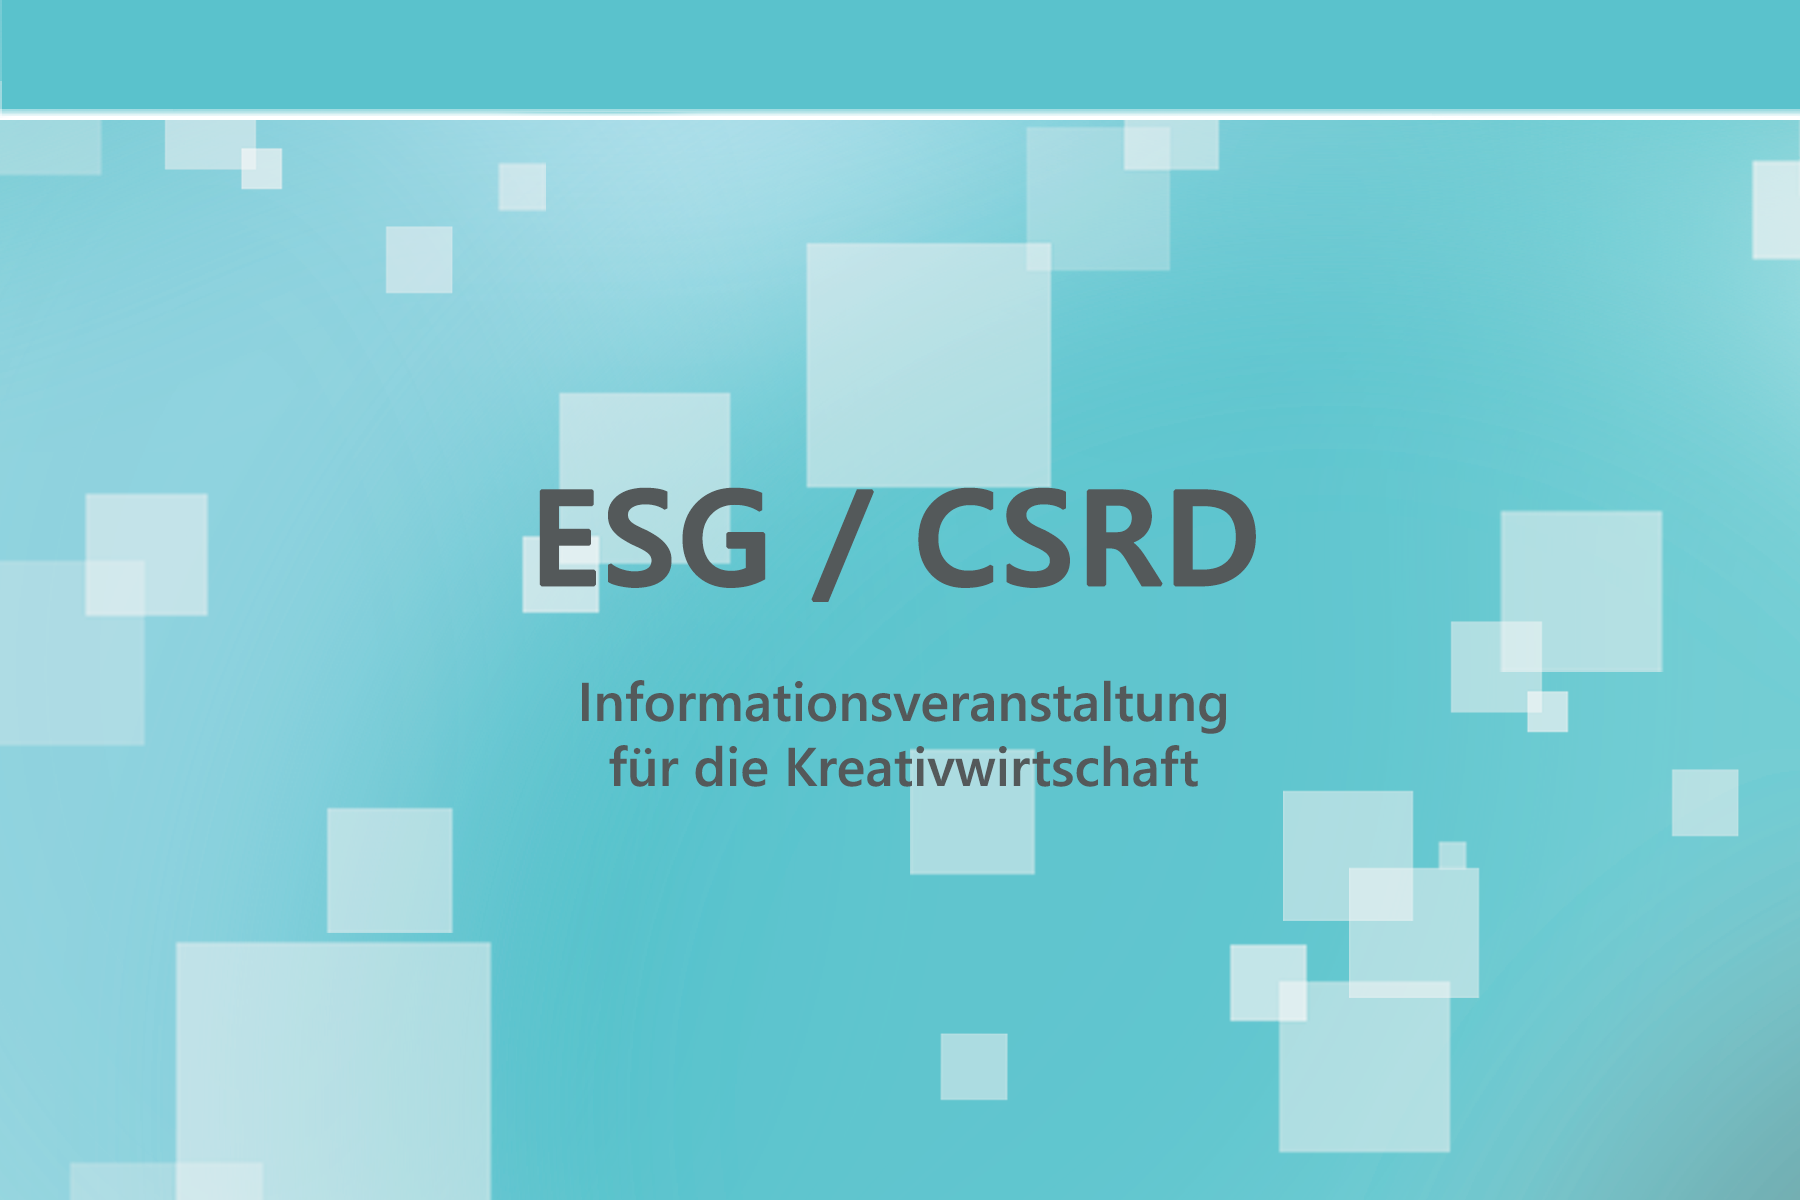 ESG / CSRD - Informationsveranstaltung für die Kreativwirtschaft - Ensider